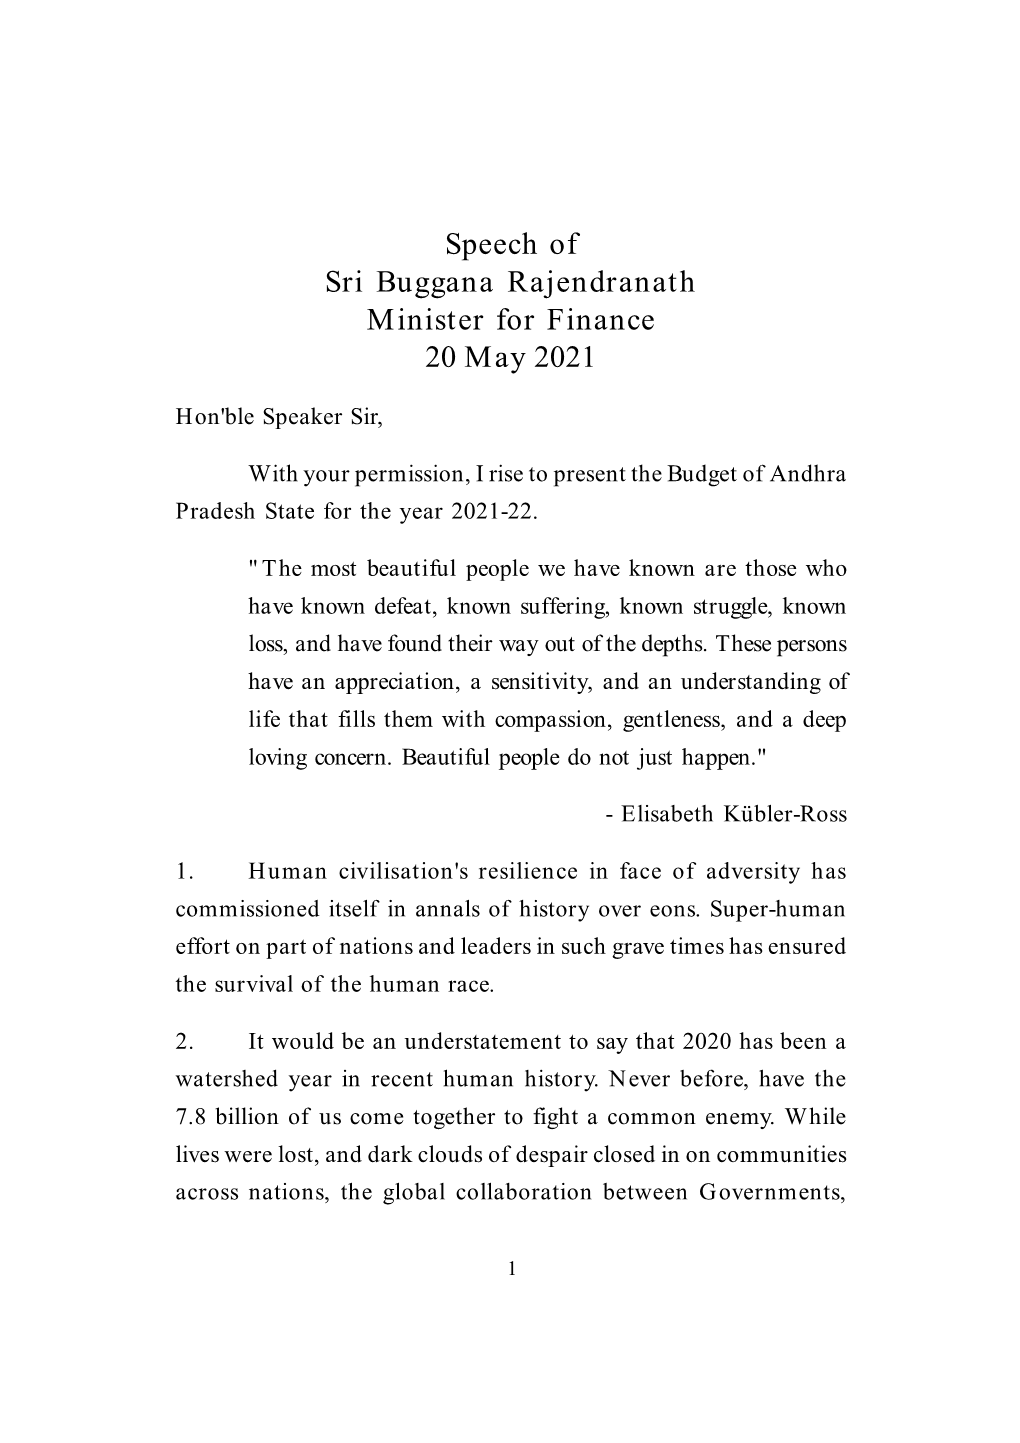 Speech of Sri Buggana Rajendranath Minister for Finance 20 May 2021